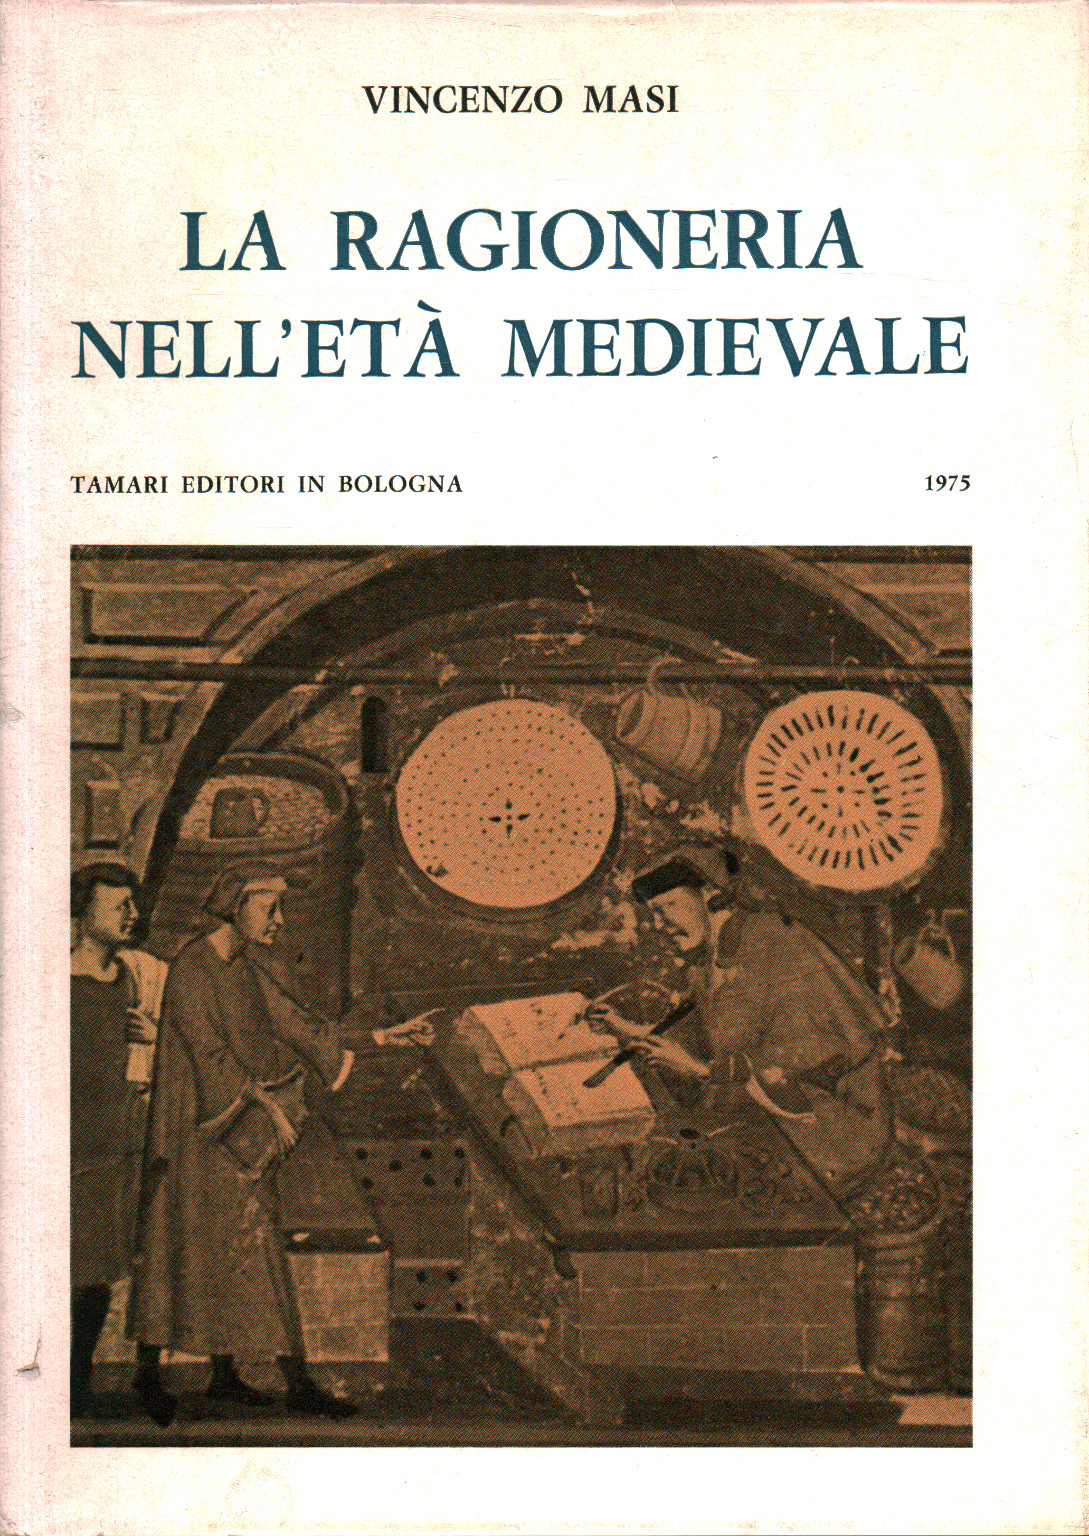 La ragioneria medievale, s.a.